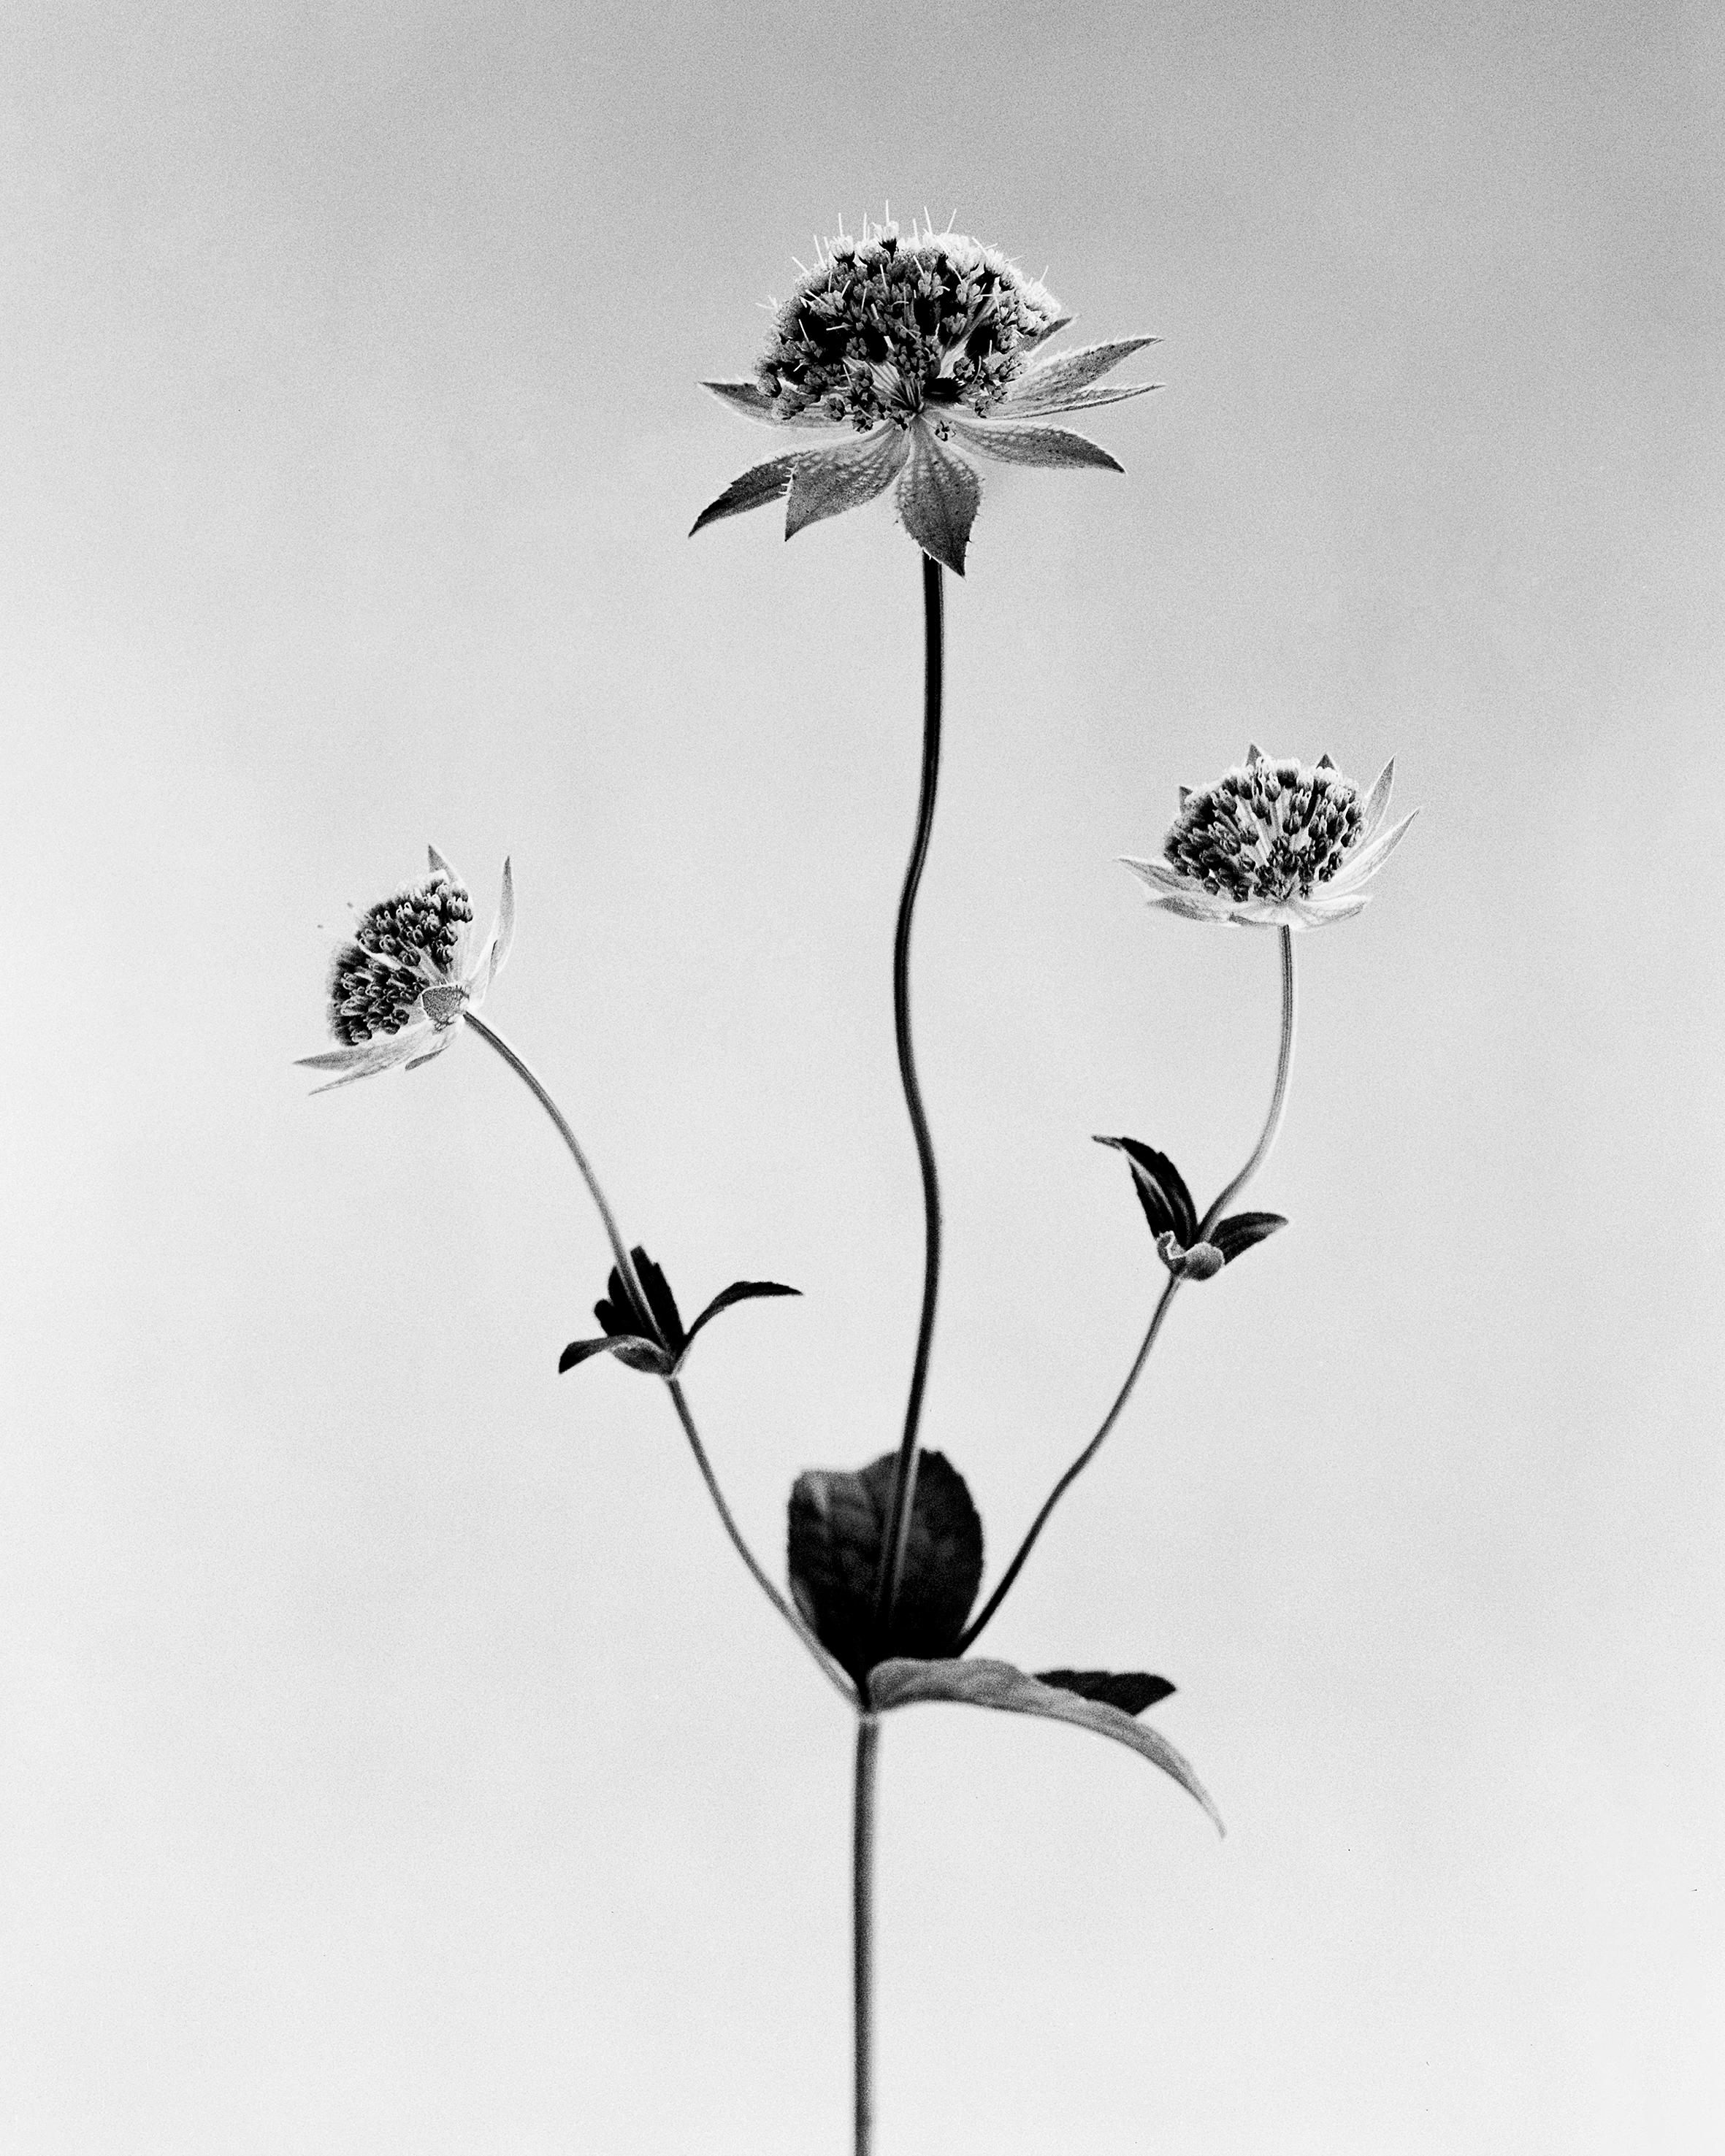 Black and White Photograph Ugne Pouwell - Astrantia - photographie florale analogique en noir et blanc, édition limitée à 20 exemplaires